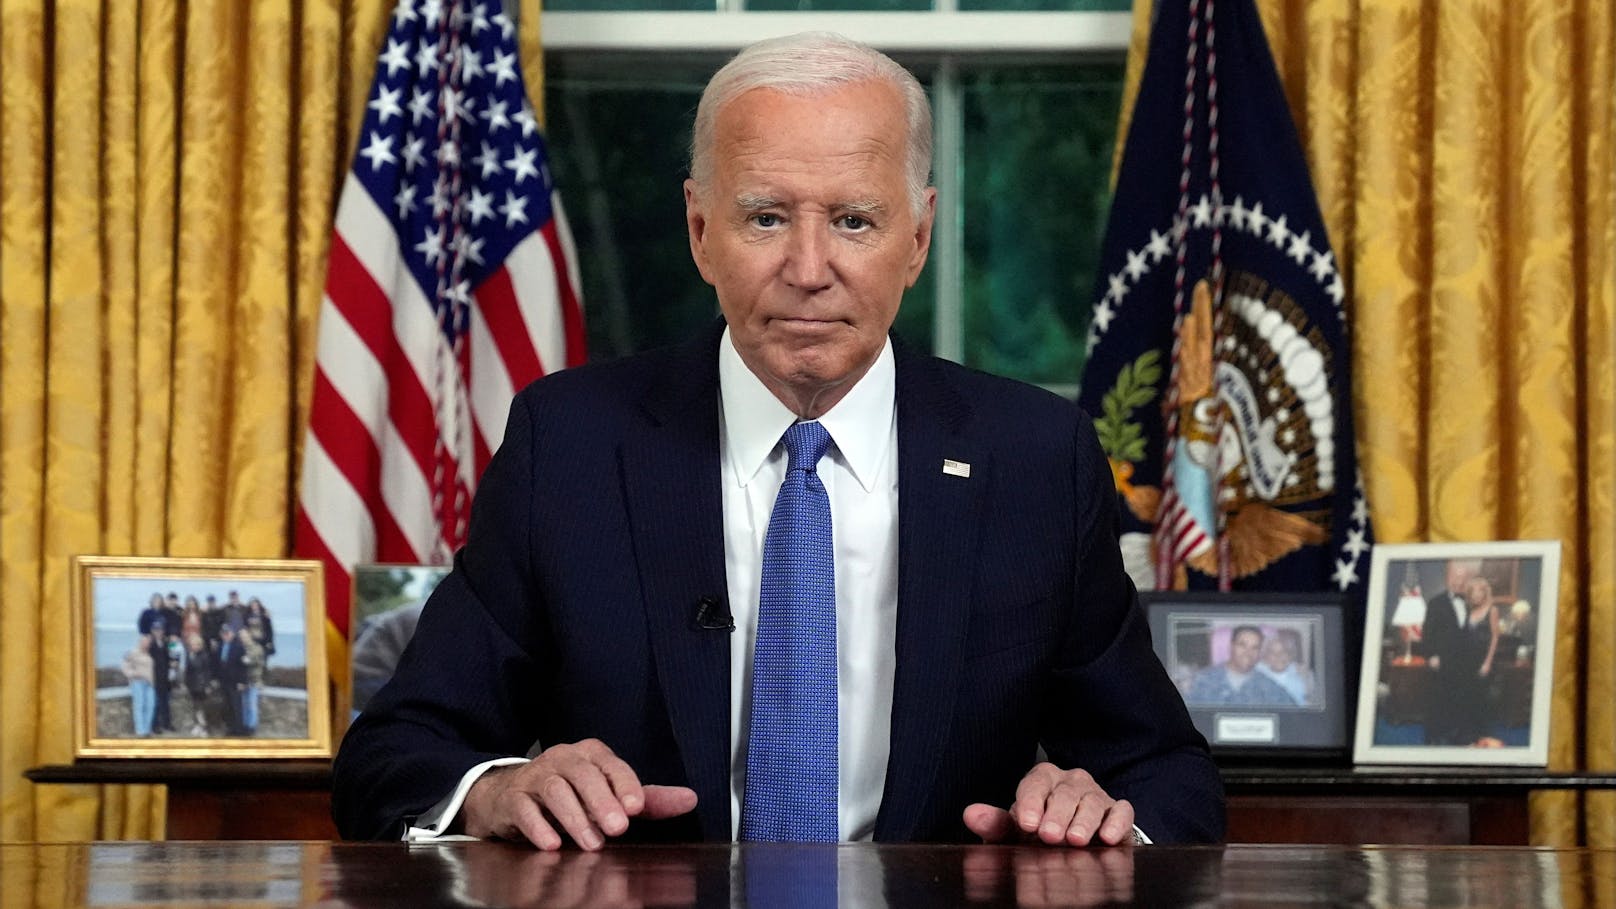 "Zeit für jüngere Stimmen": Joe Biden erklärt Rückzug